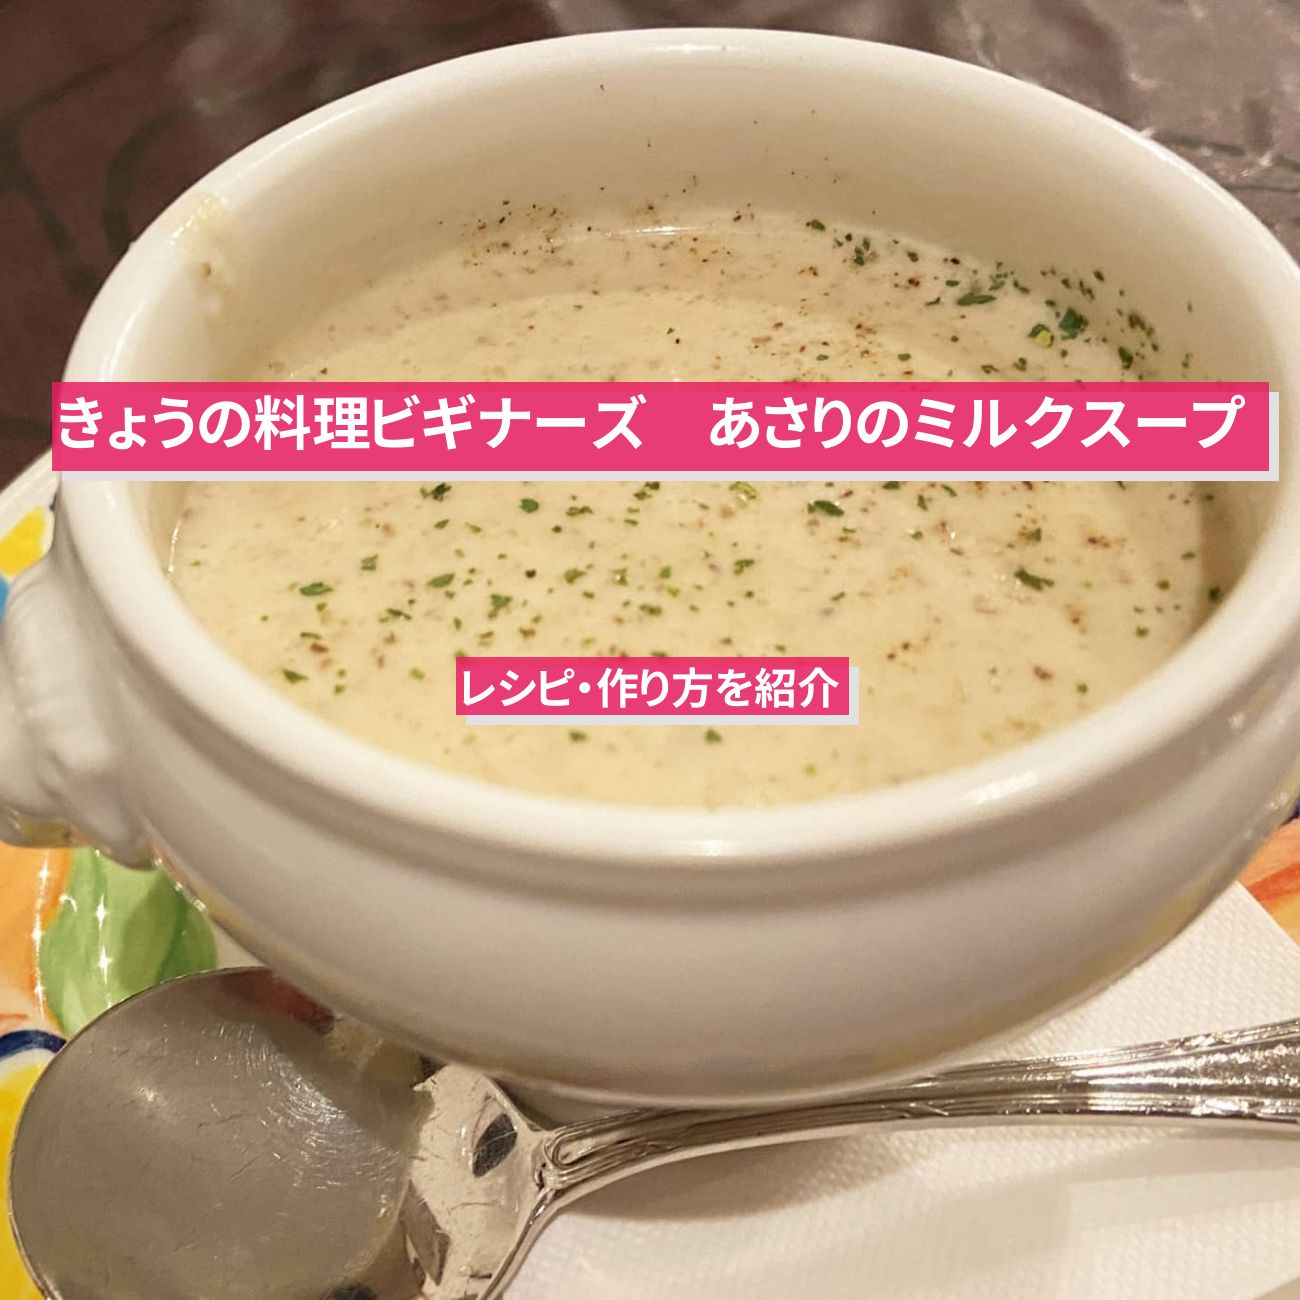 【きょうの料理ビギナーズ】『あさりのミルクスープ』のレシピ・作り方を紹介